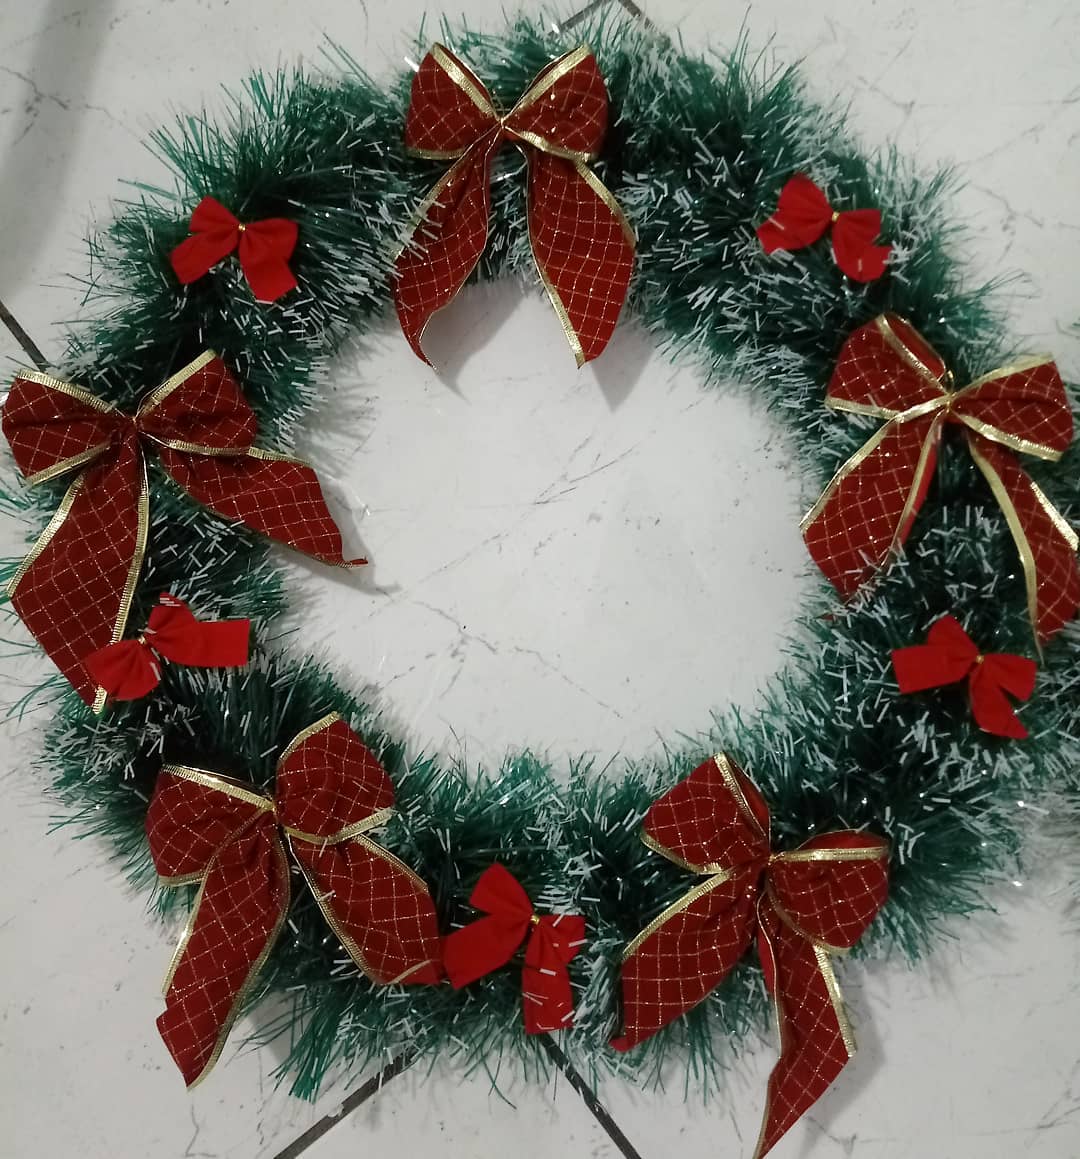 Guirlandas de Natal: 148 ideias de como decorar com esse enfeite encantador  – Mari Carvalho